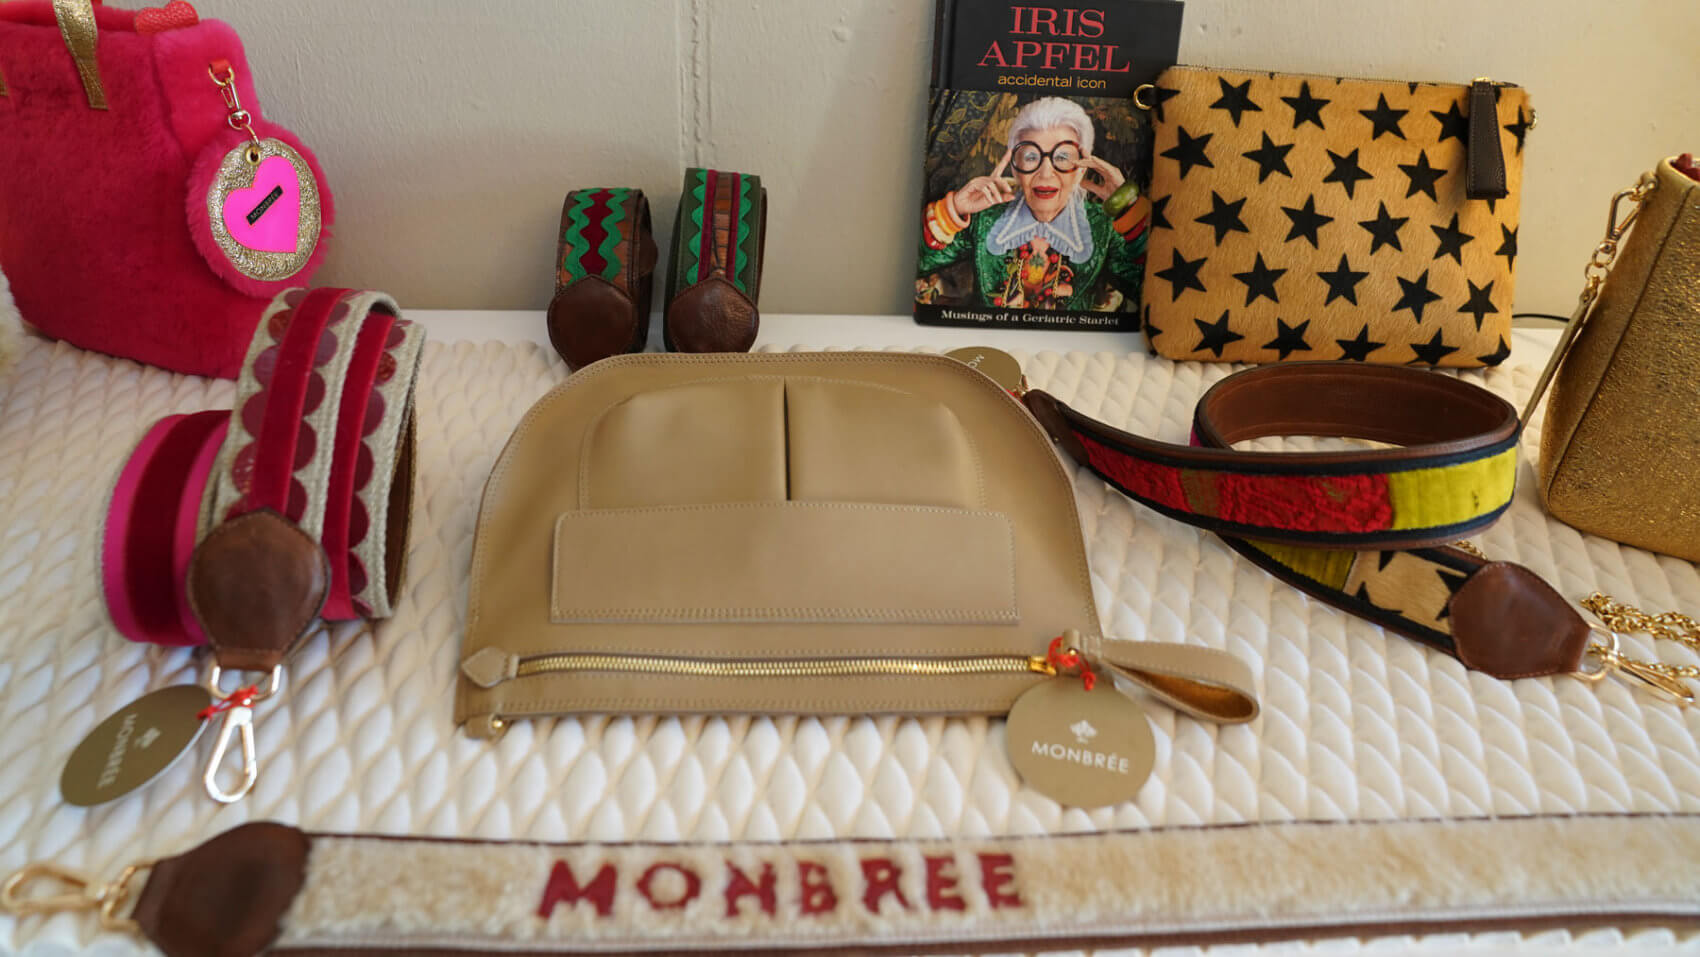 Bei Monbrée findet sich eine breite und bunte Auswahl an Damen- und Herrenhandtaschen, dazu passenden Gurten und Accessoires.